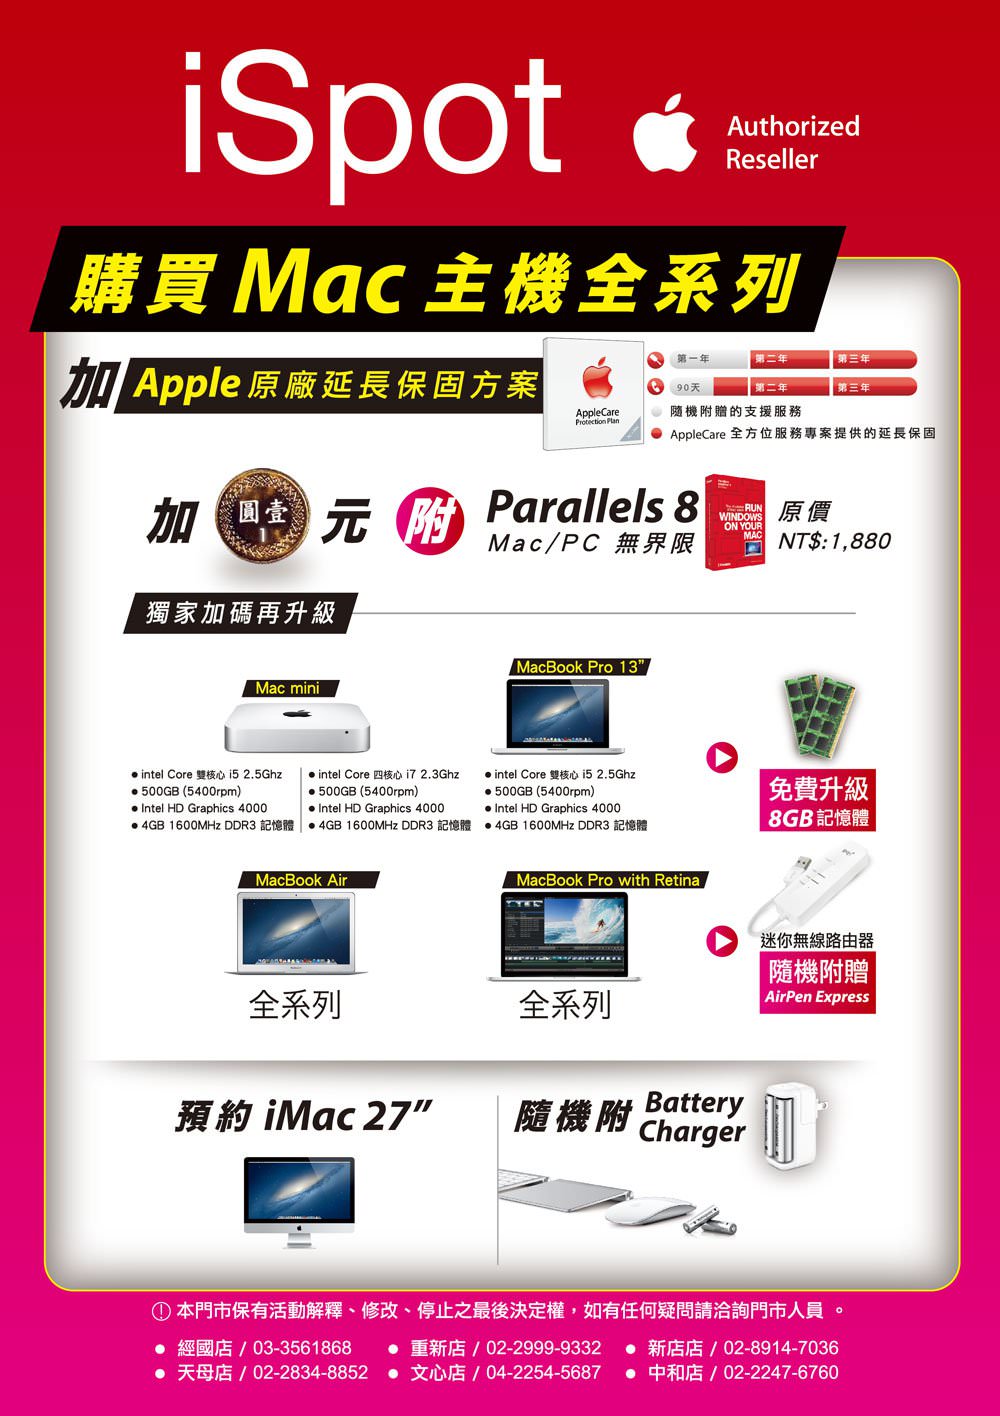 [優惠已截止] 家樂福蘋果店買 AppleCare 加 1 元送 Parallels 8